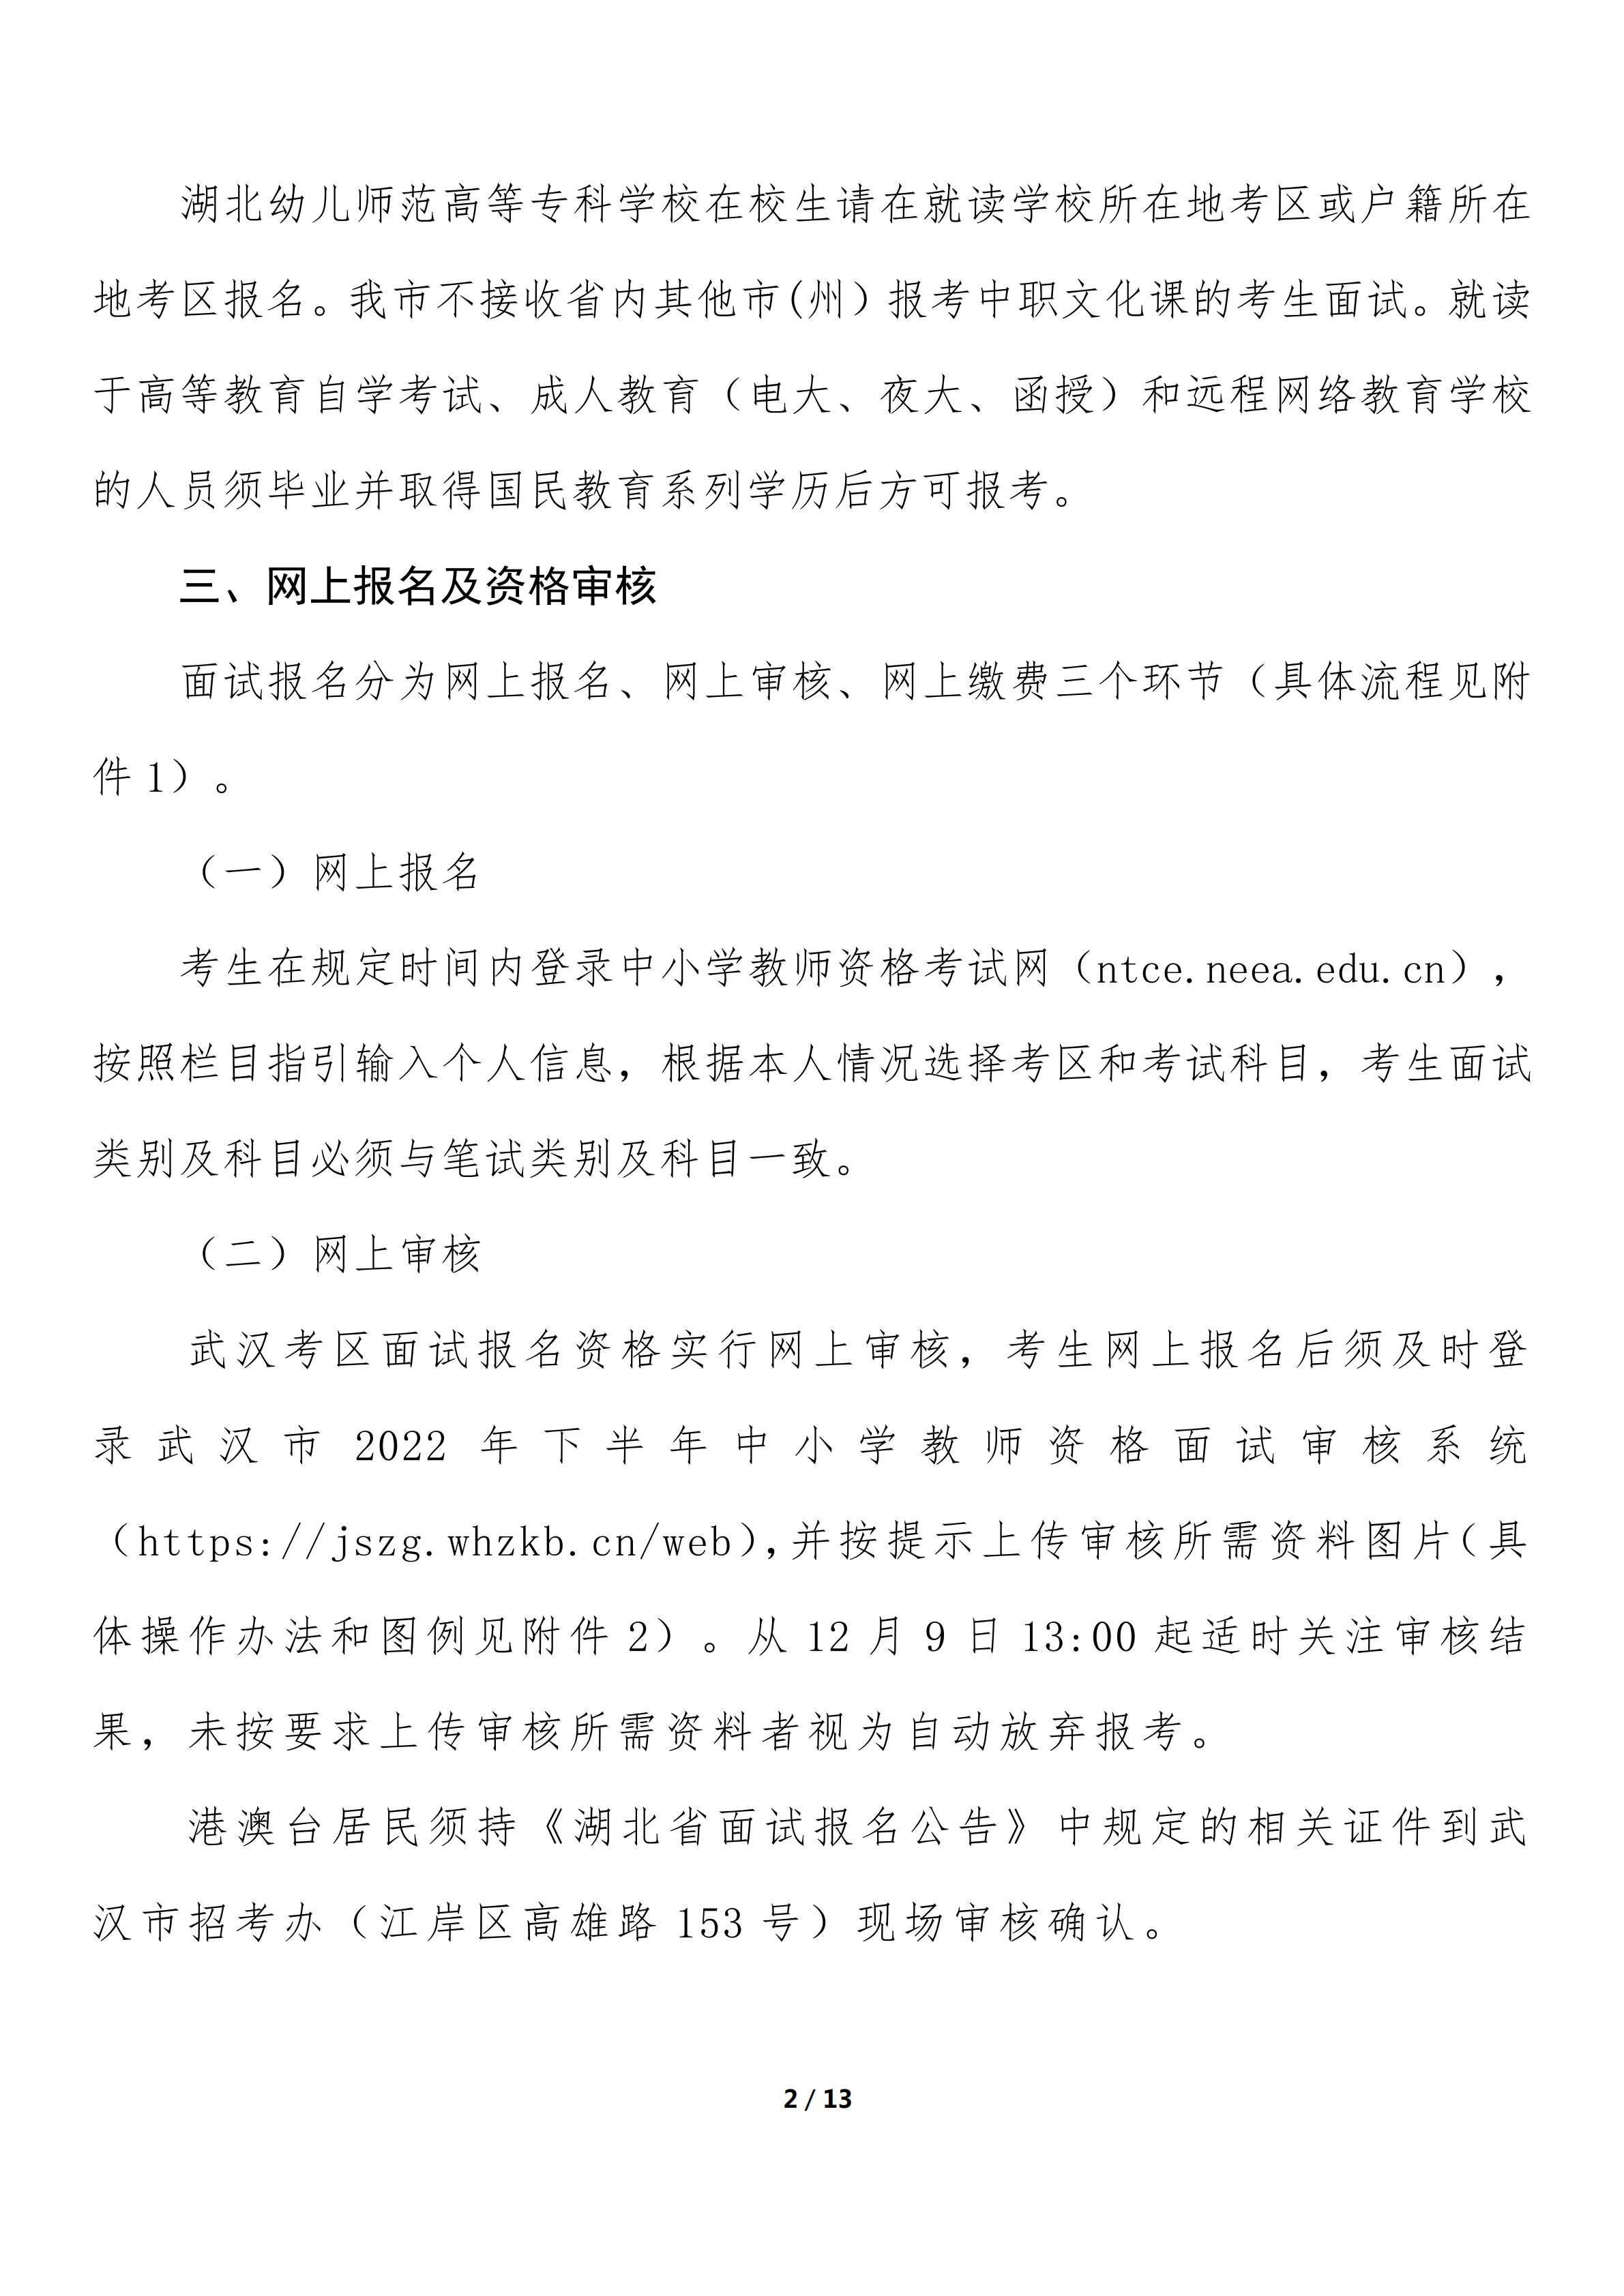 2022年下半年武汉市中小学教师资格考试（面试）报名公告图2